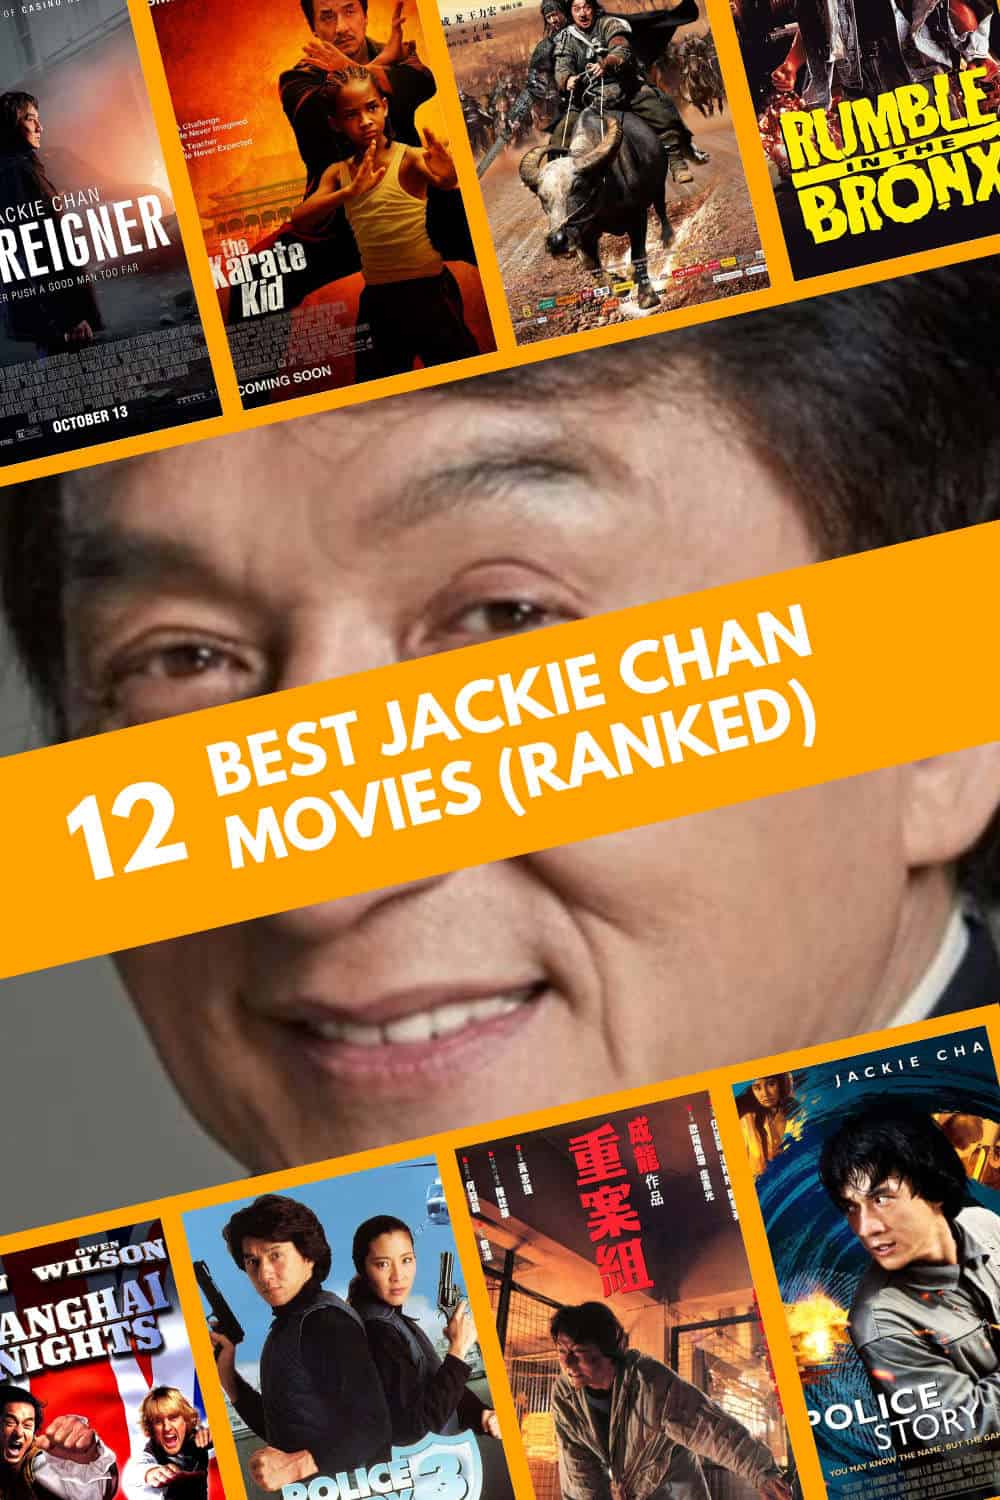 Best Jackie Chan Movie (Ranked)